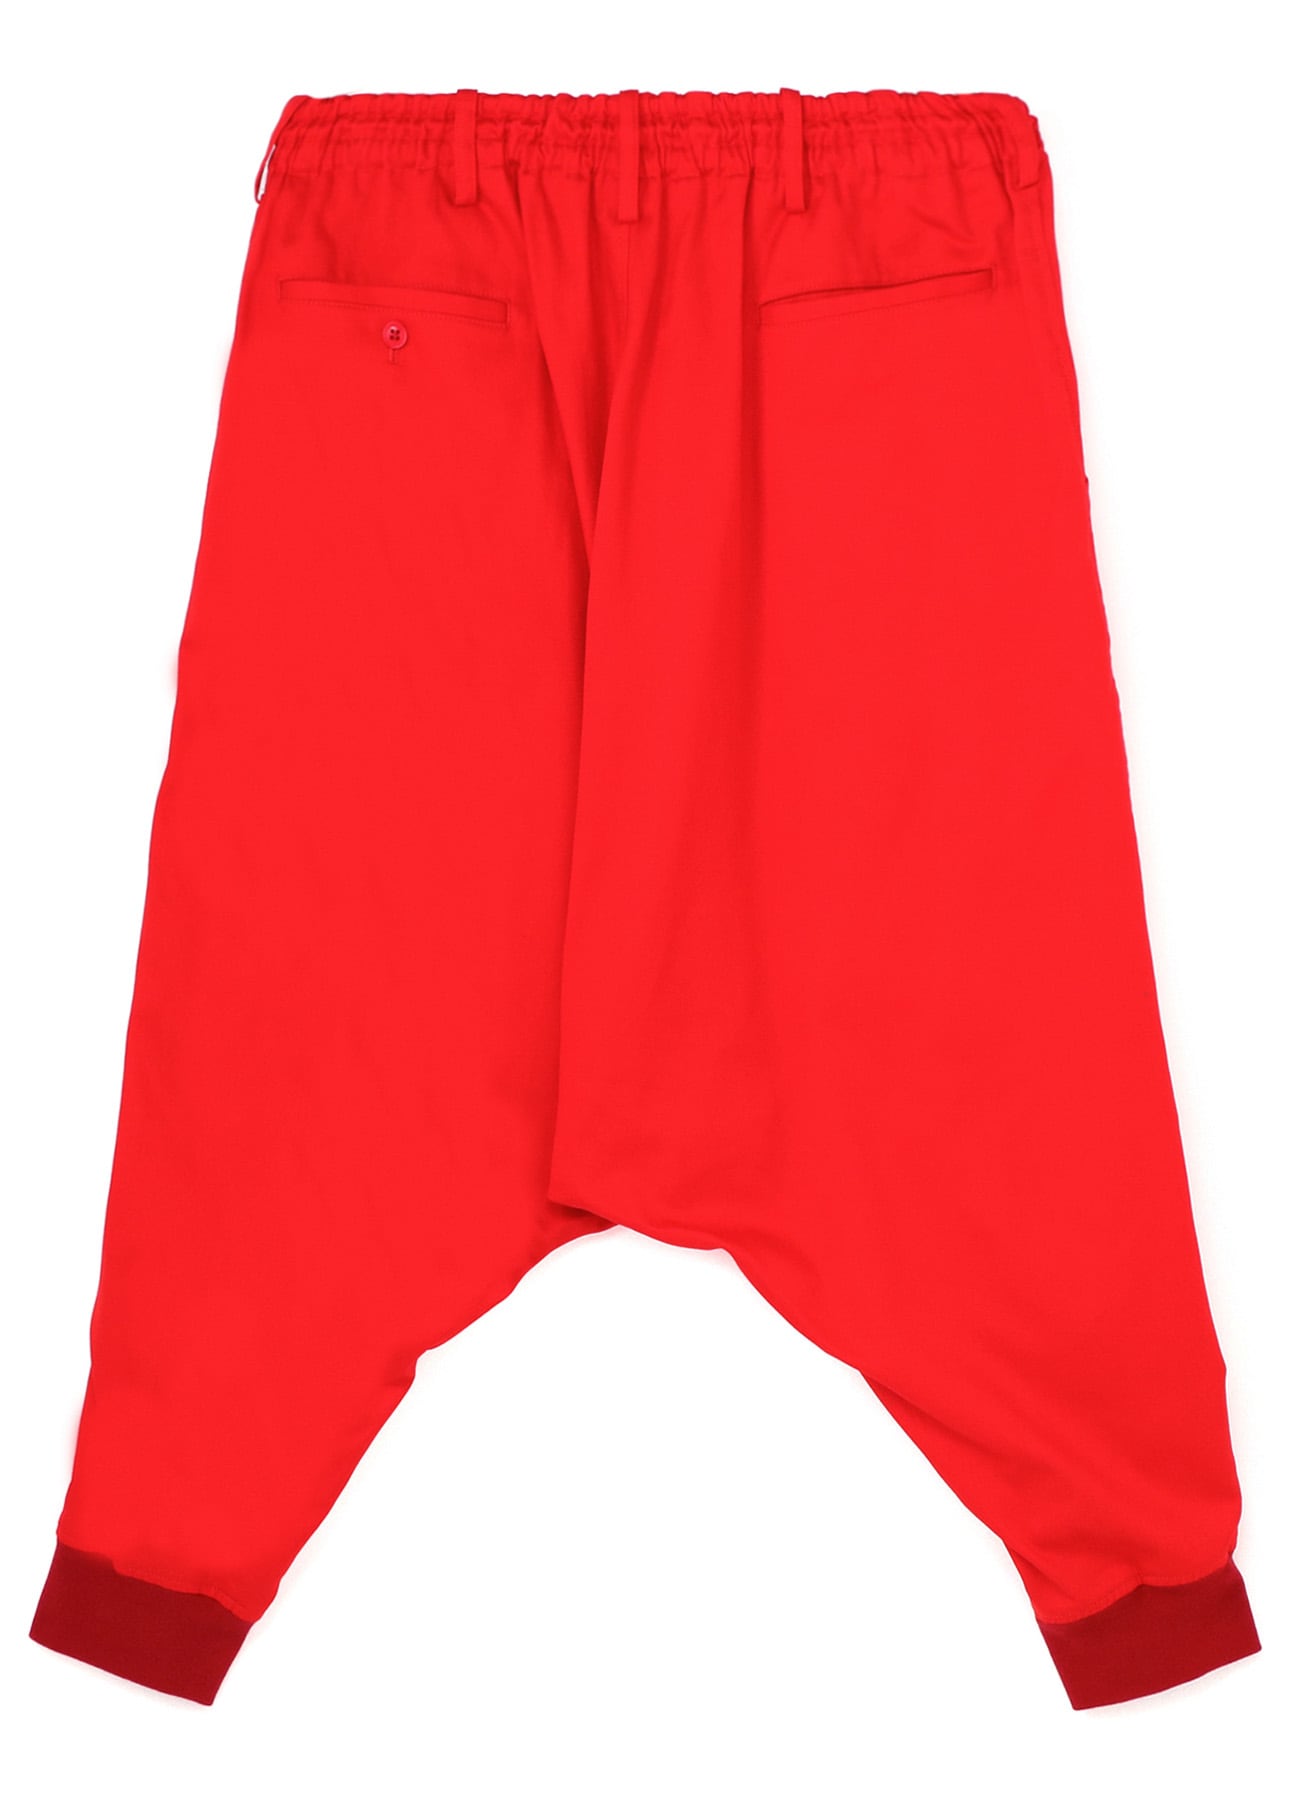 送料無料】 オールインワン pants/RED fleece 2way SIIILON 